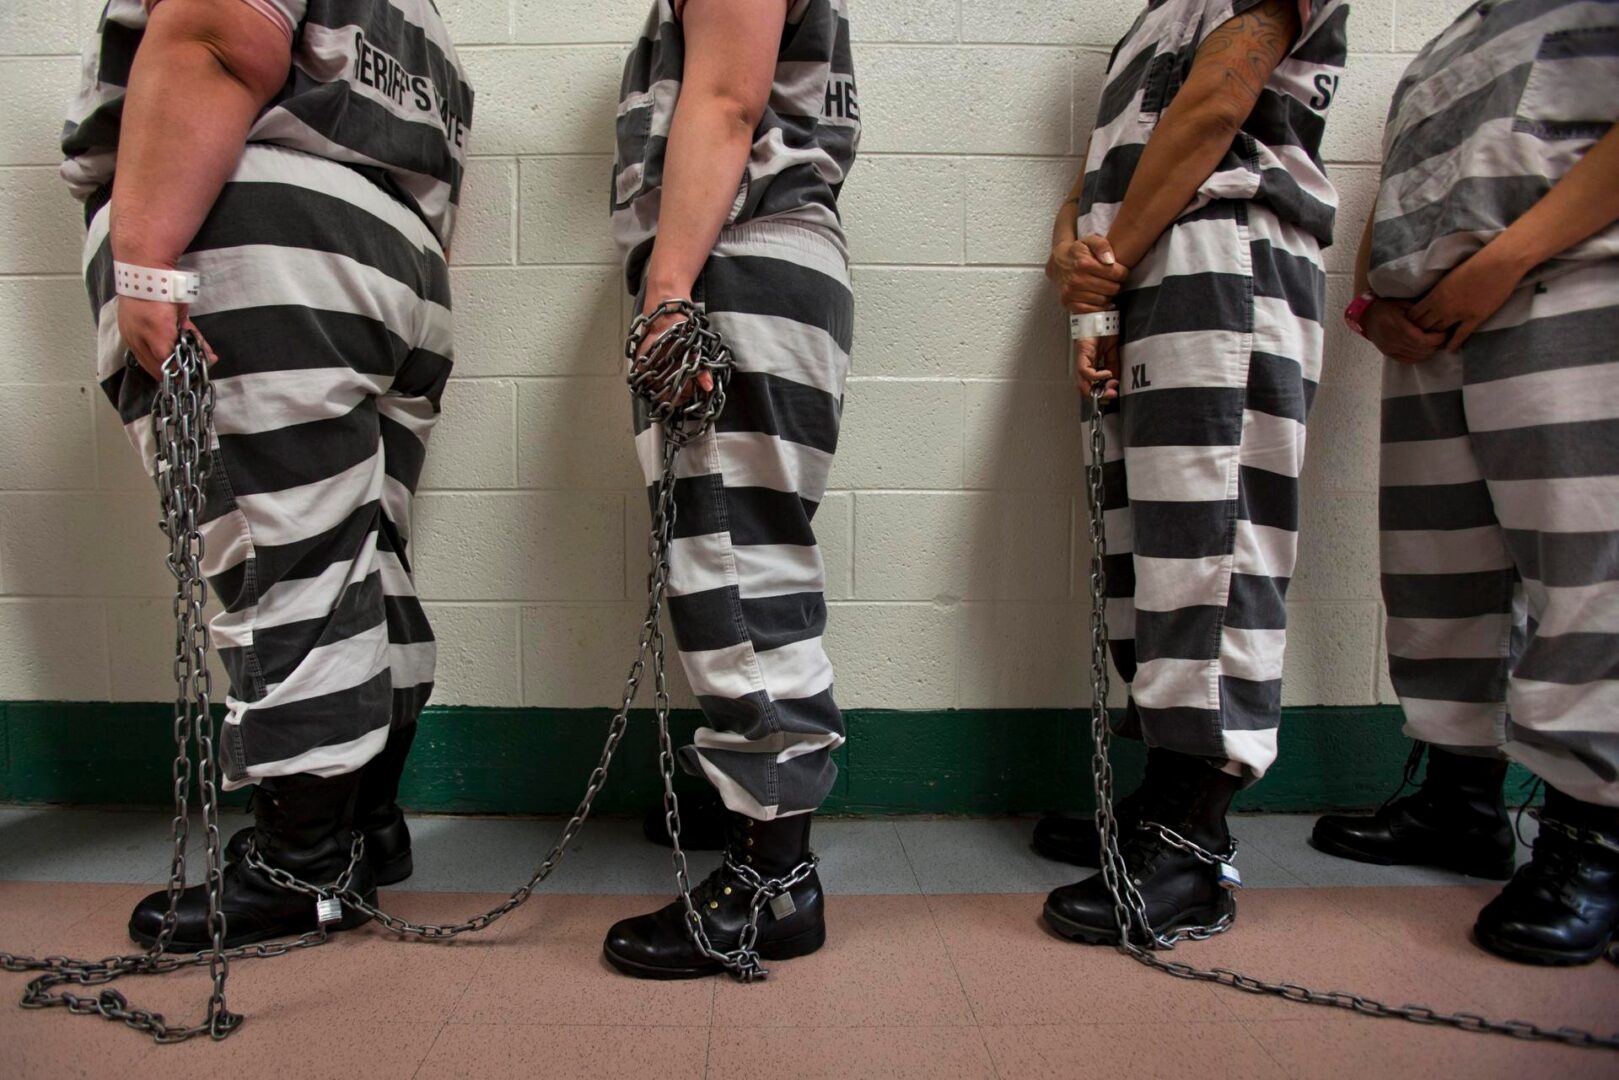 Cerrarán una prisión de mujeres de California donde se denunciaron abusos sexuales